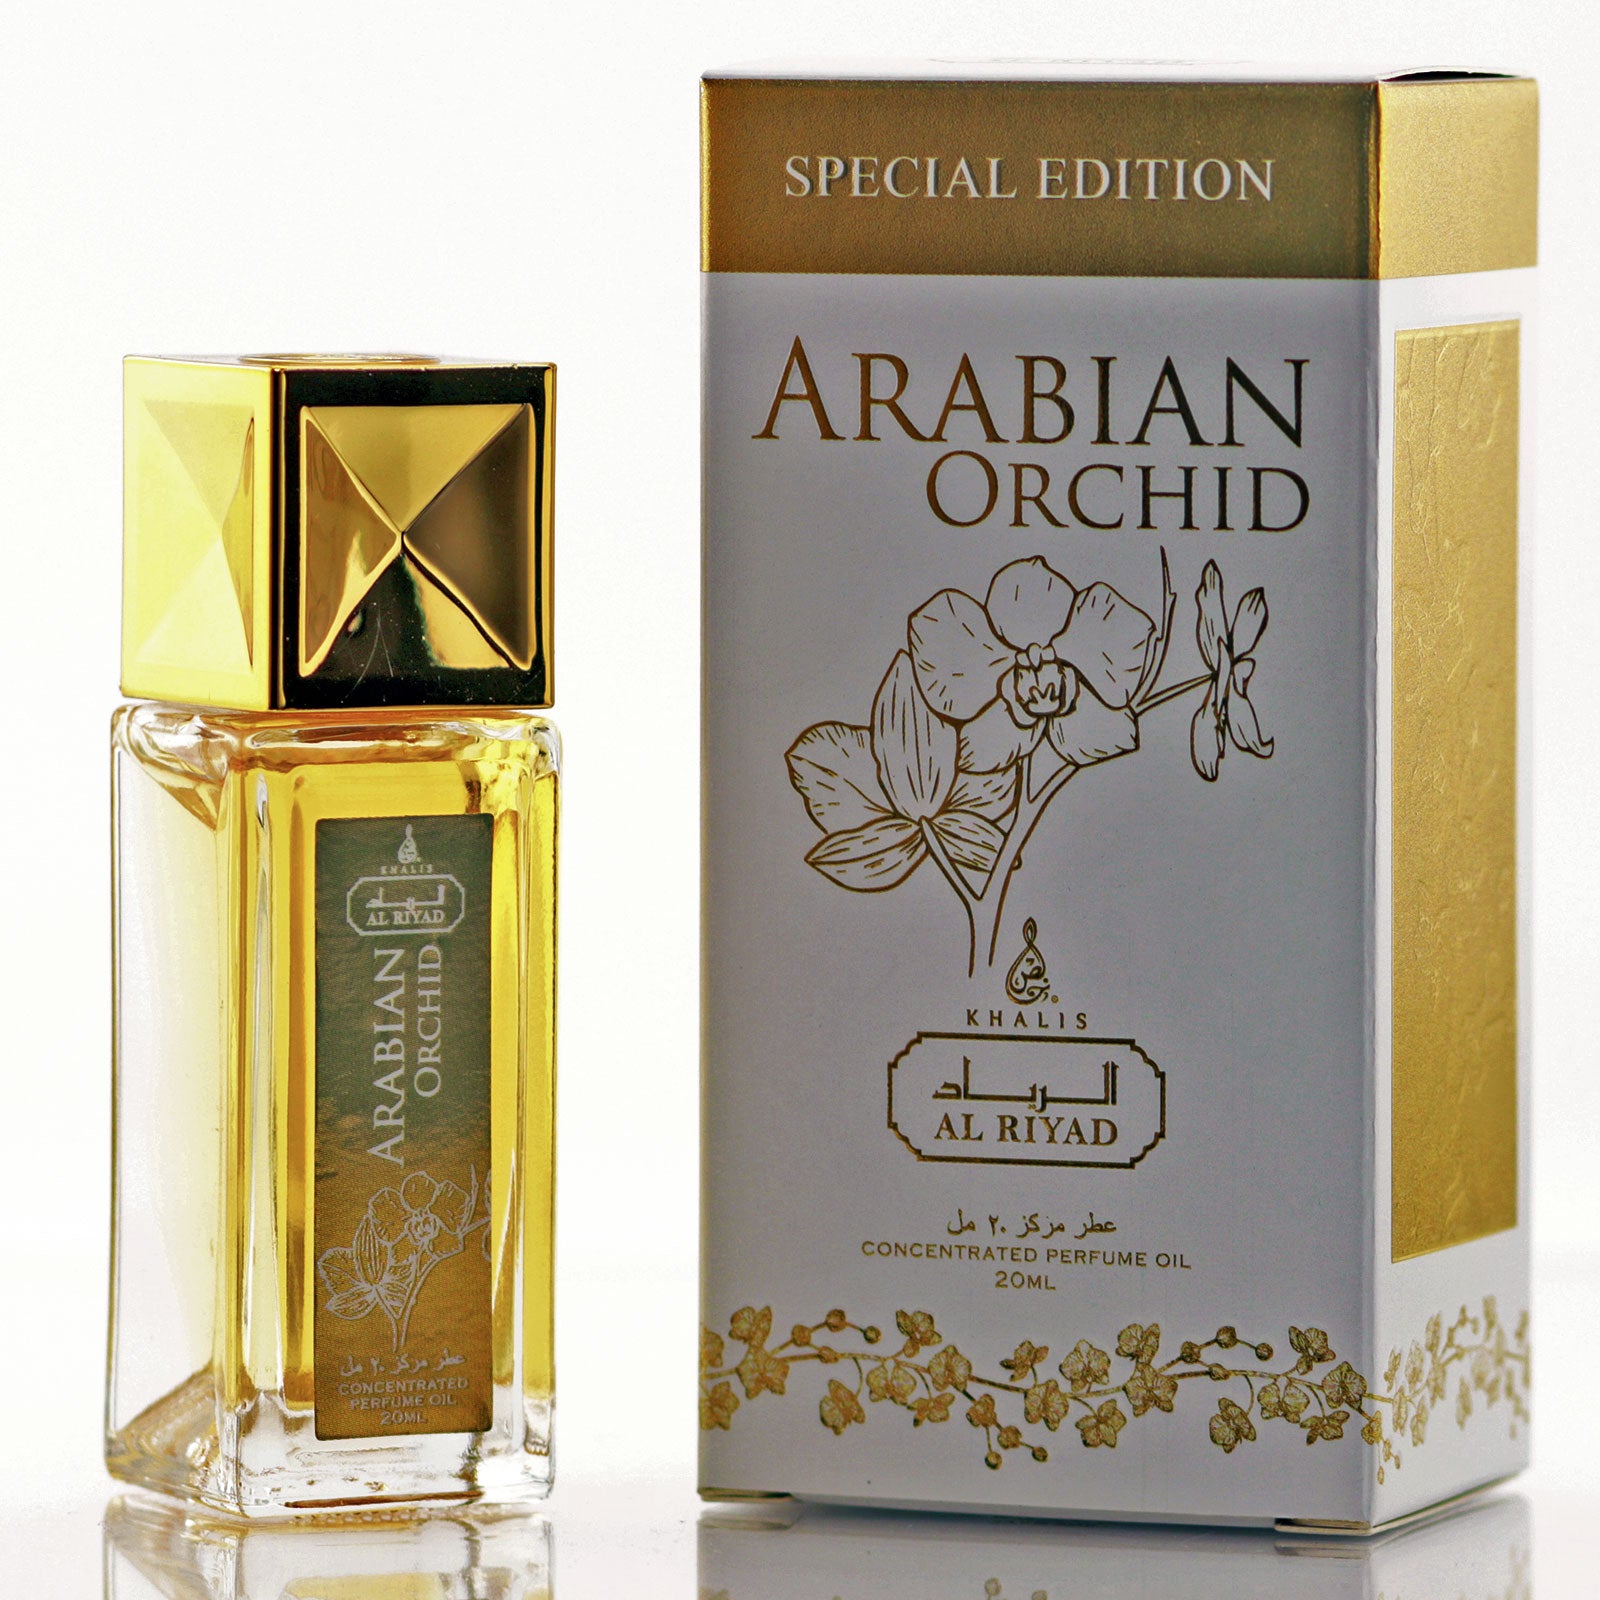 ARABIAN ORCHID 20 ML OIL (Roll On)